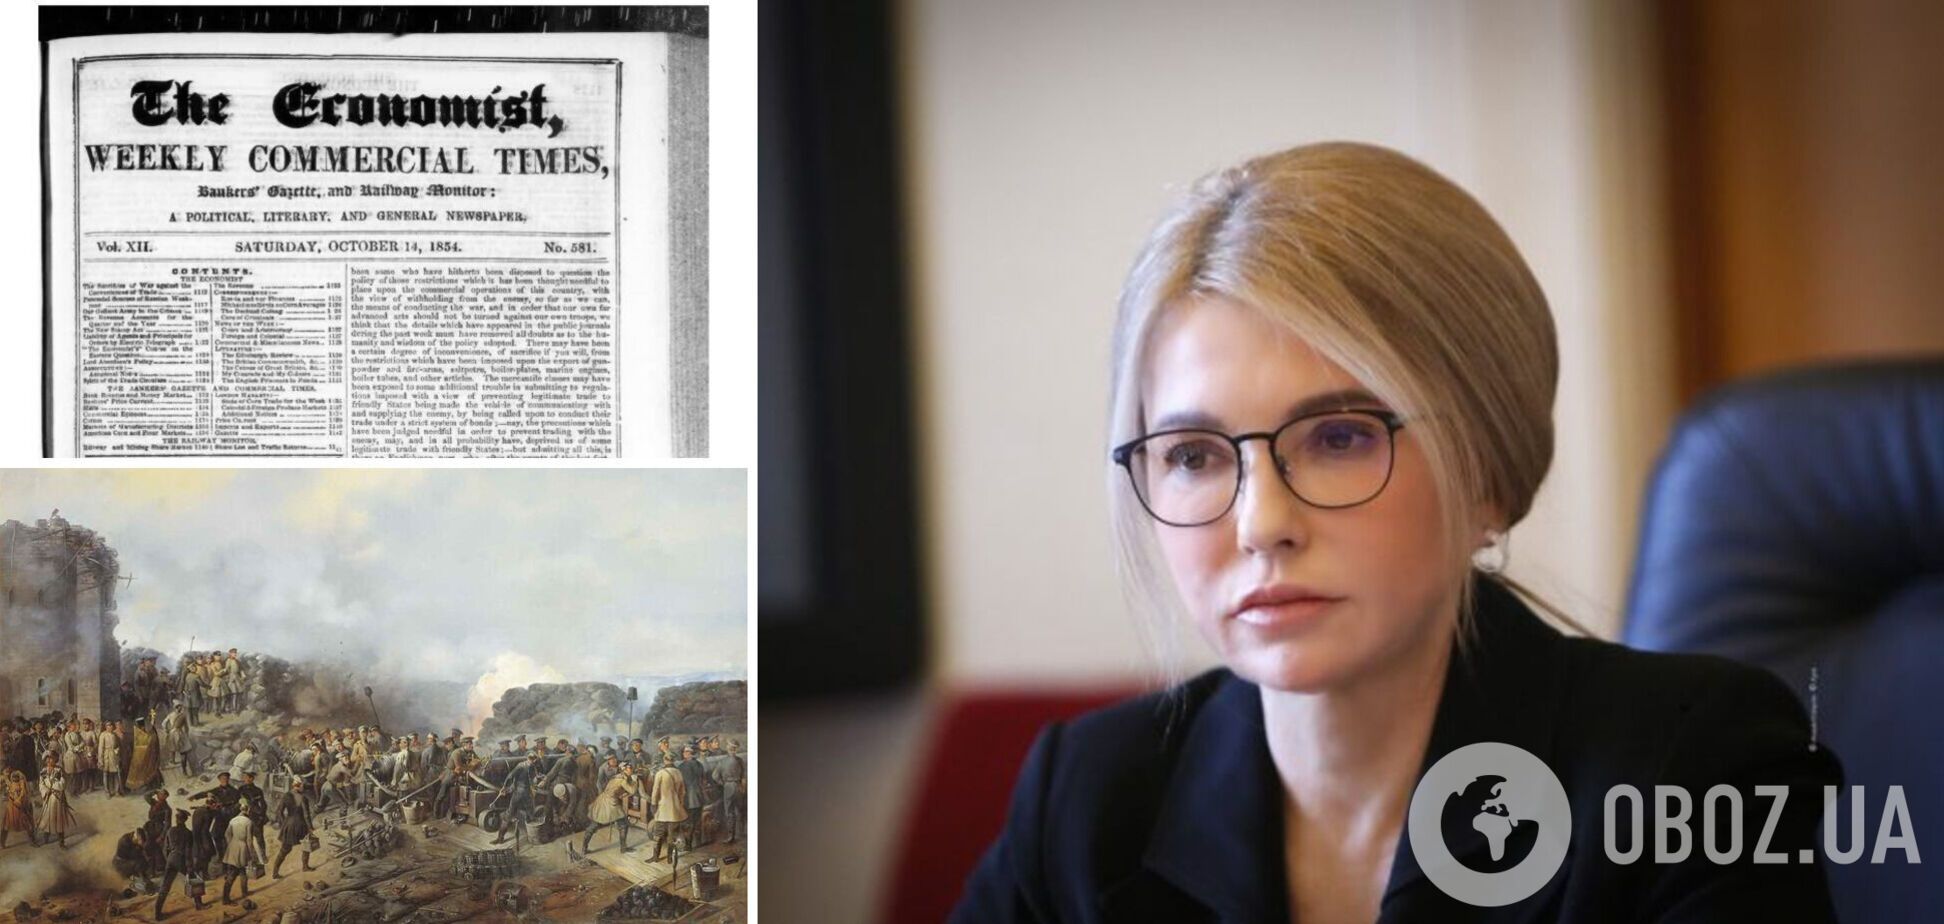 Тимошенко вспомнила статью The Economist с 1854 года и призвала Европу не бояться РФ